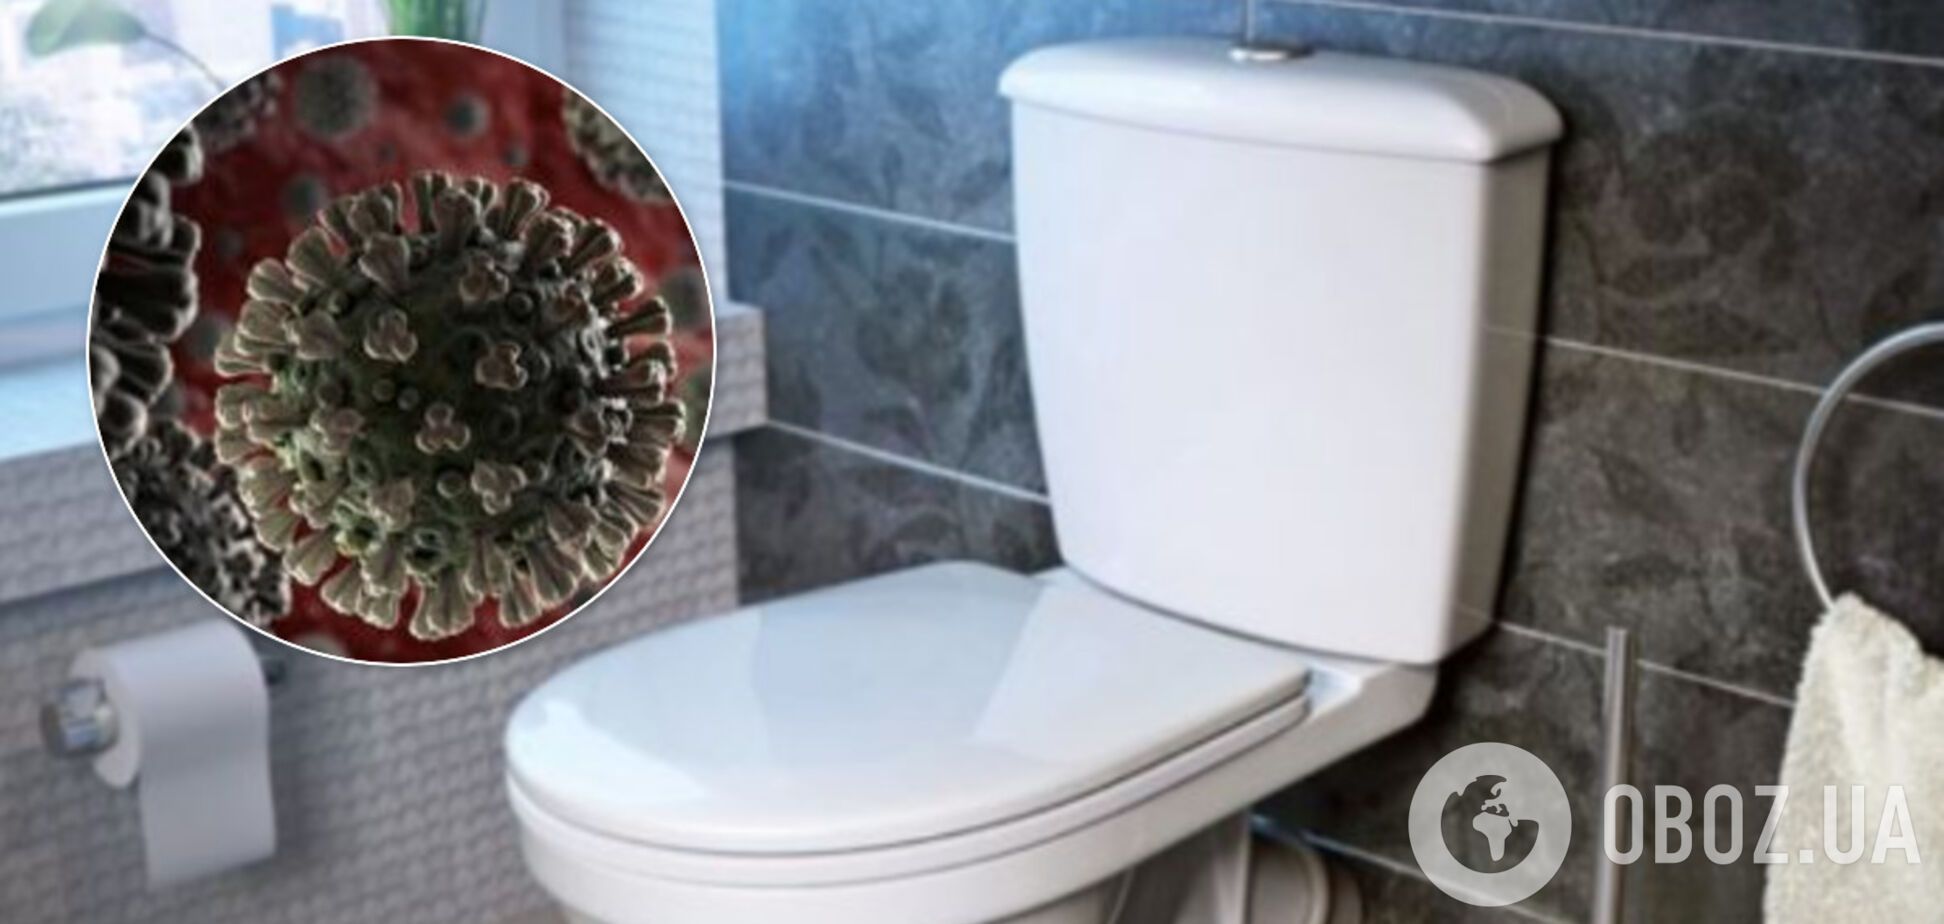 Опасность в туалете: ученые указали на еще один способ заражения коронавирусом